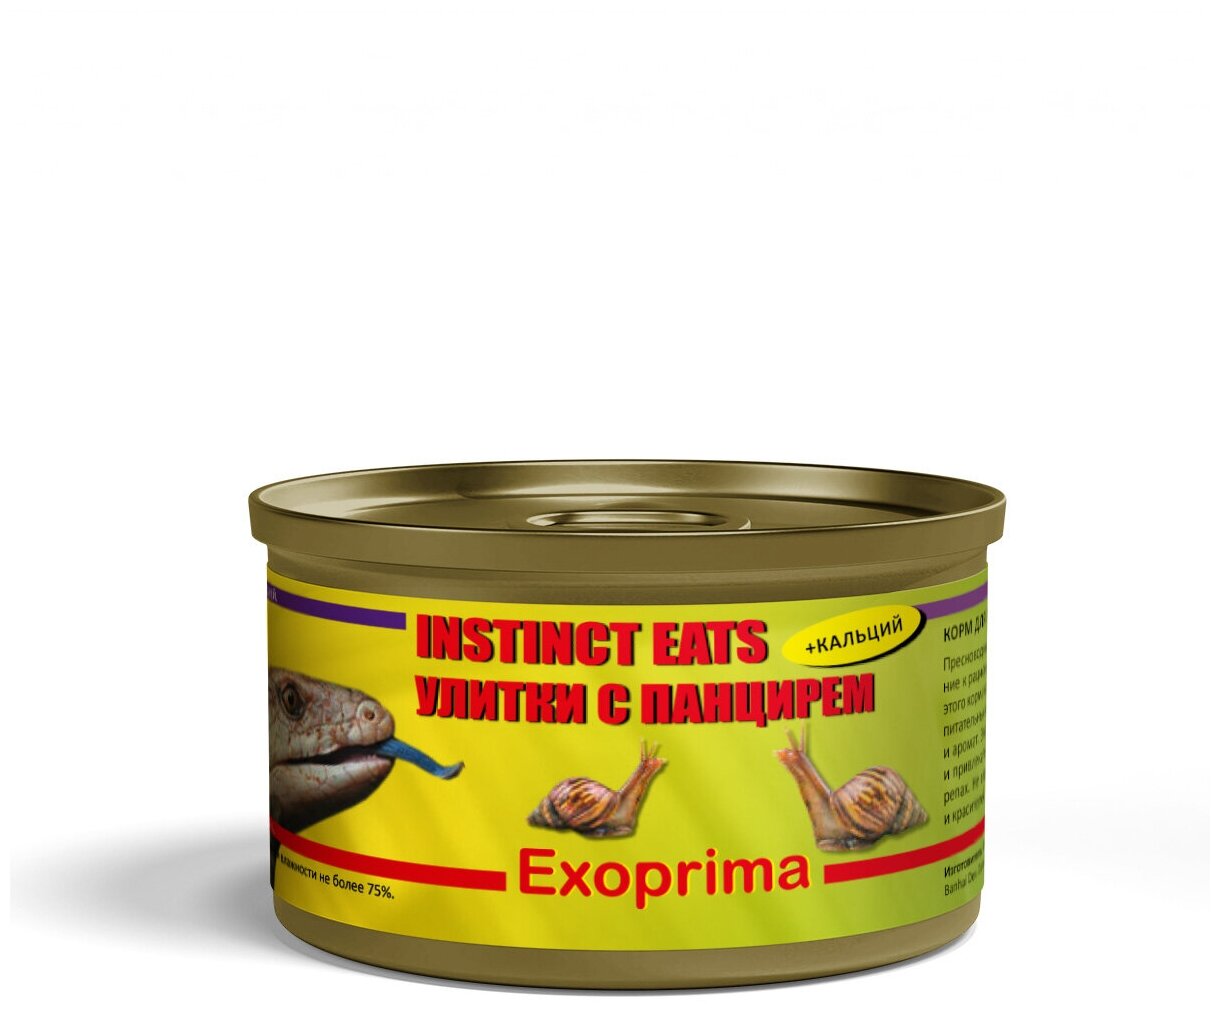 EXOPRIMA Instinct Eats Корм для рептилий консервированный "Улитки с панцирем", З5гр Exoprima ExoFood - фото №7